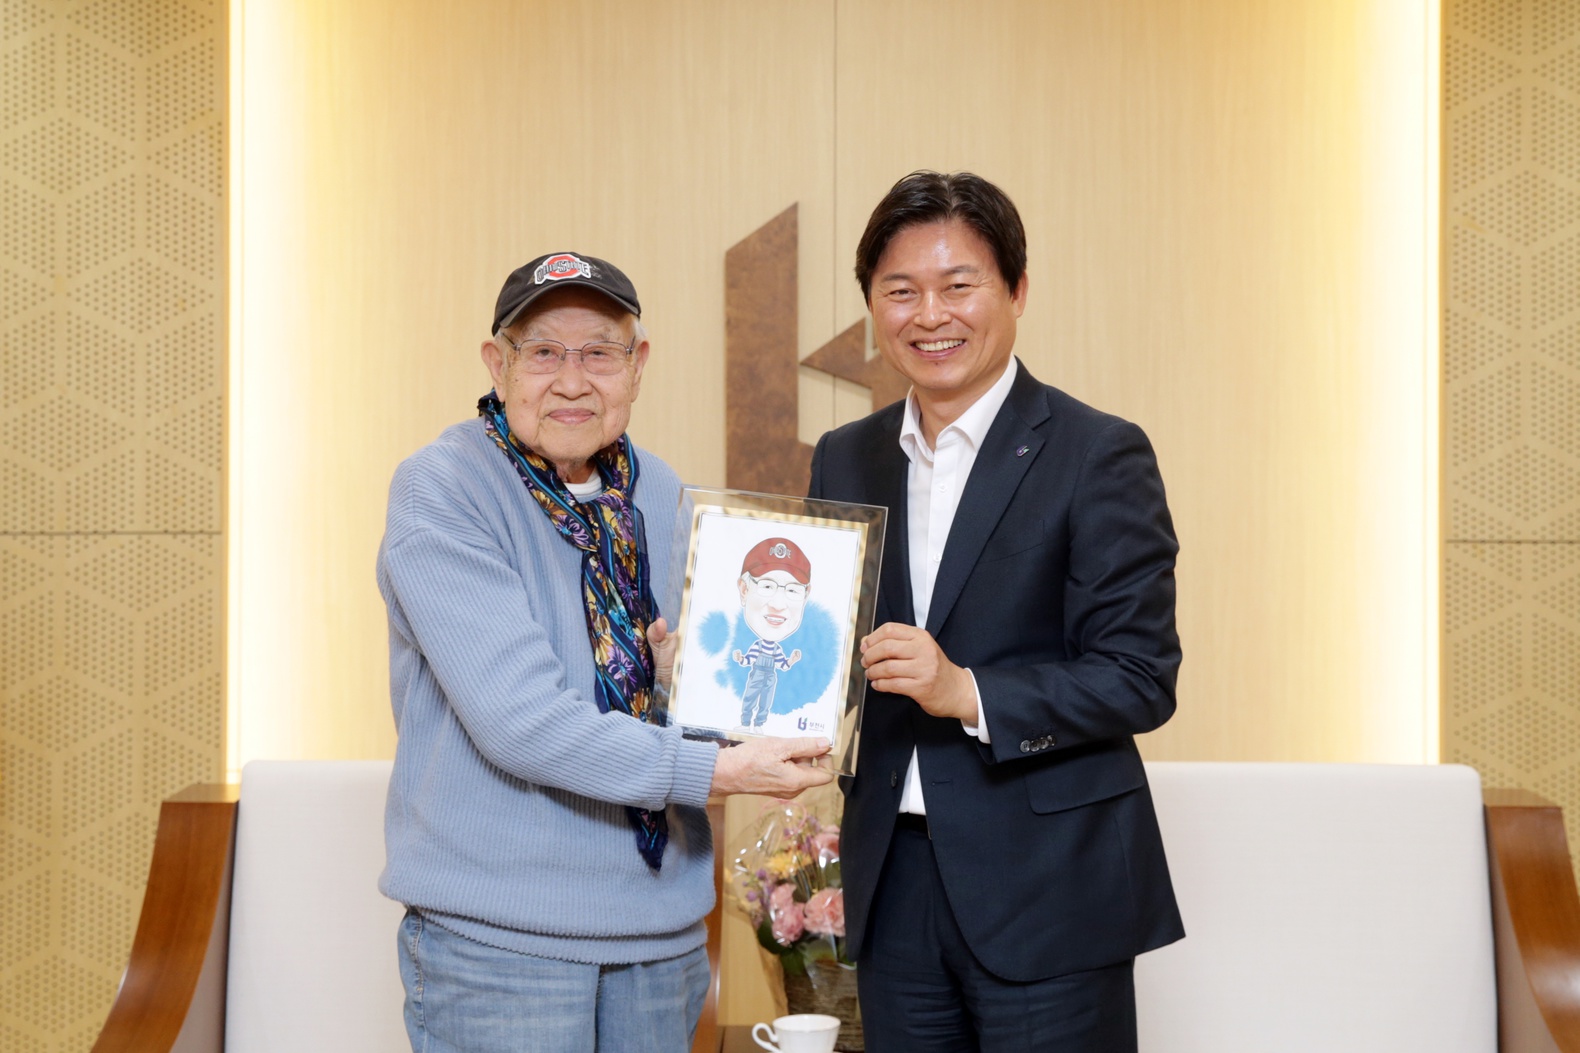 한국반도체 설립 50주년 축하, 강기동 박사 접견 이미지